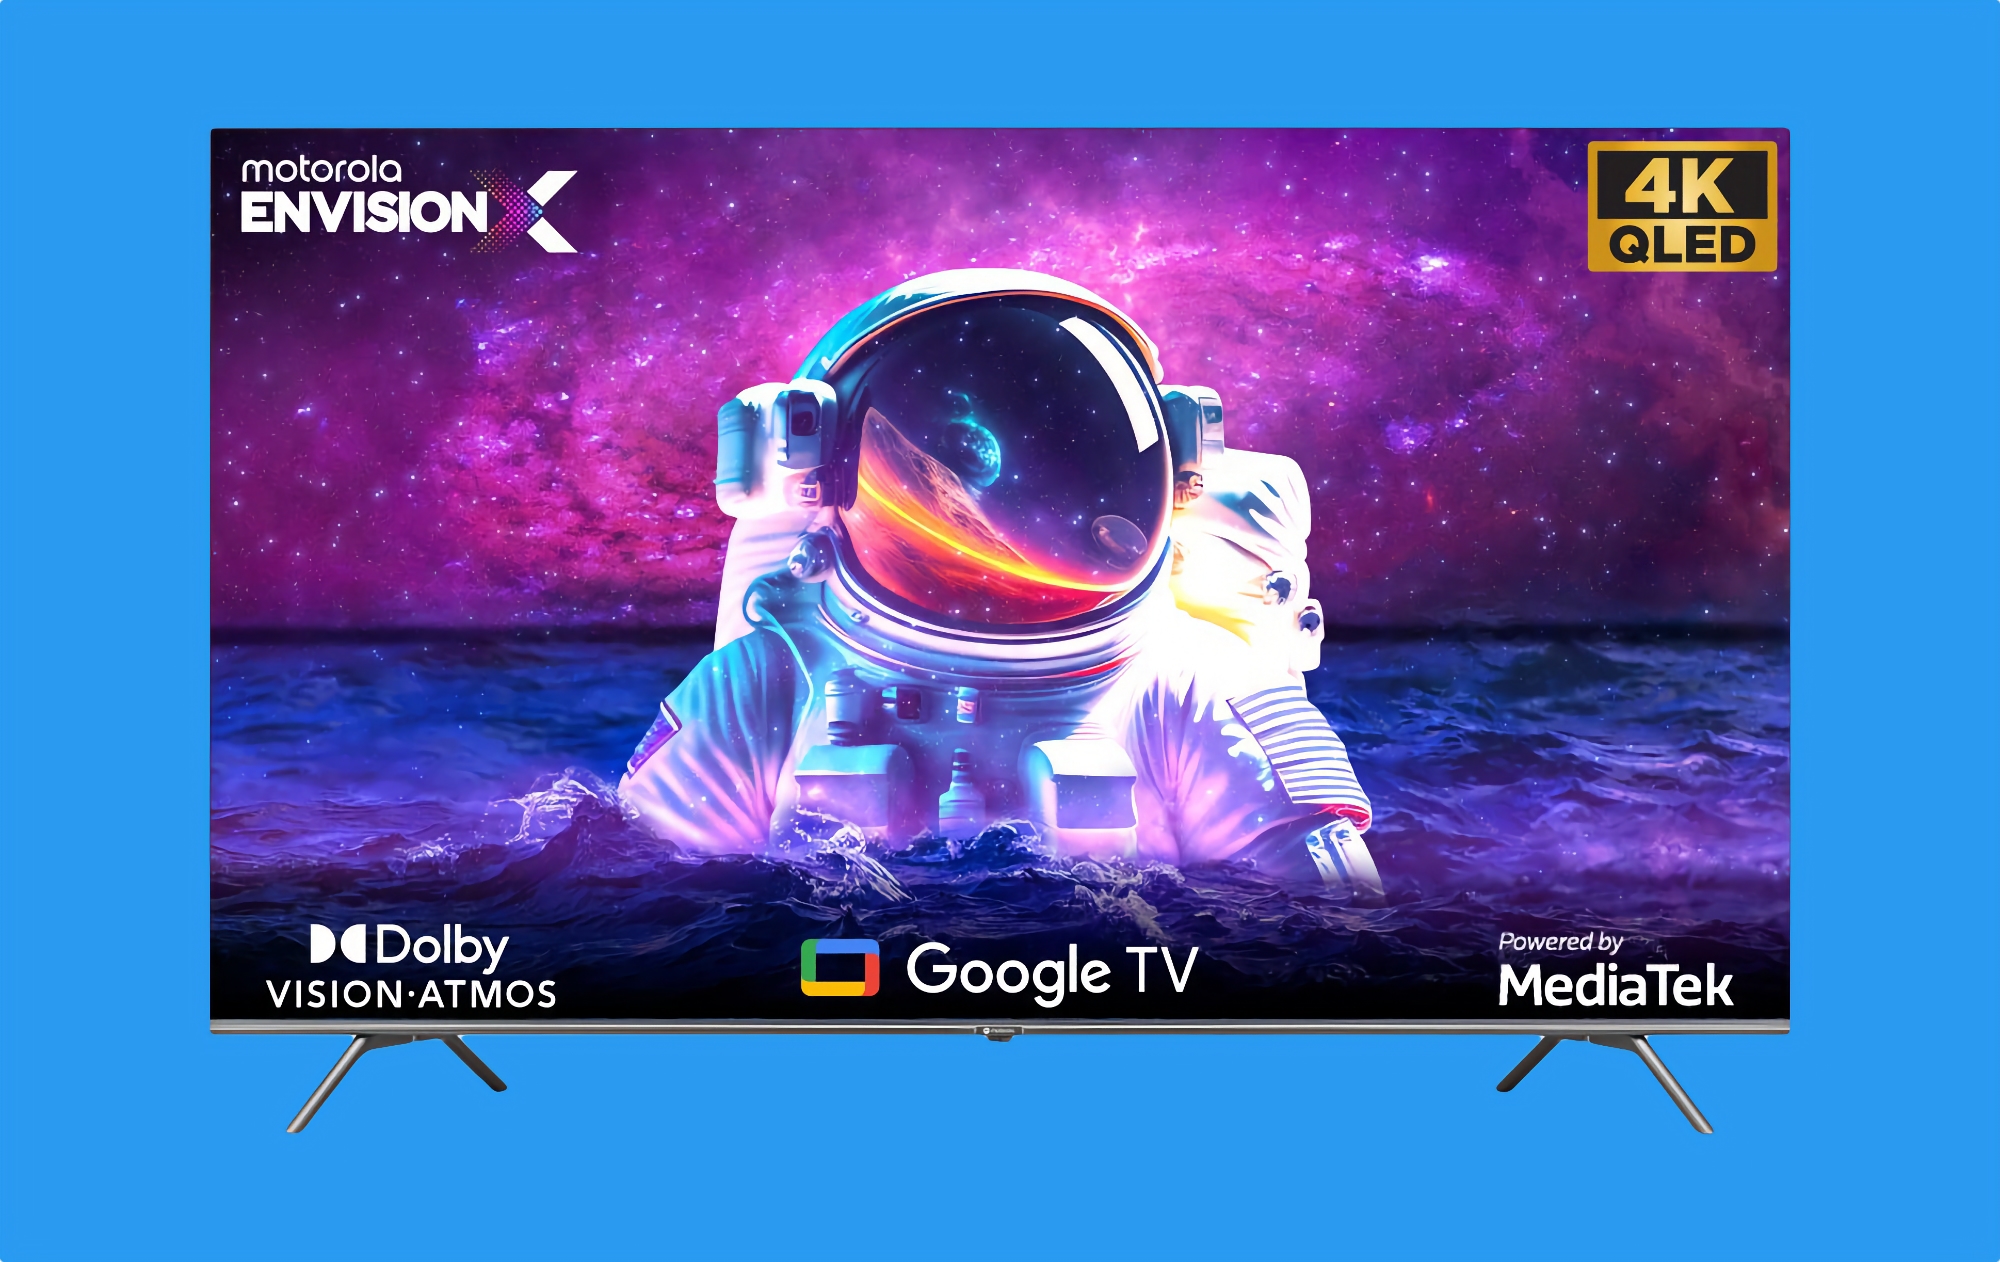 Motorola Envision X TV: Smart-TV-Reihe mit 4K QLED-Bildschirmen bis zu 65″, Dolby Vision und Google TV an Bord